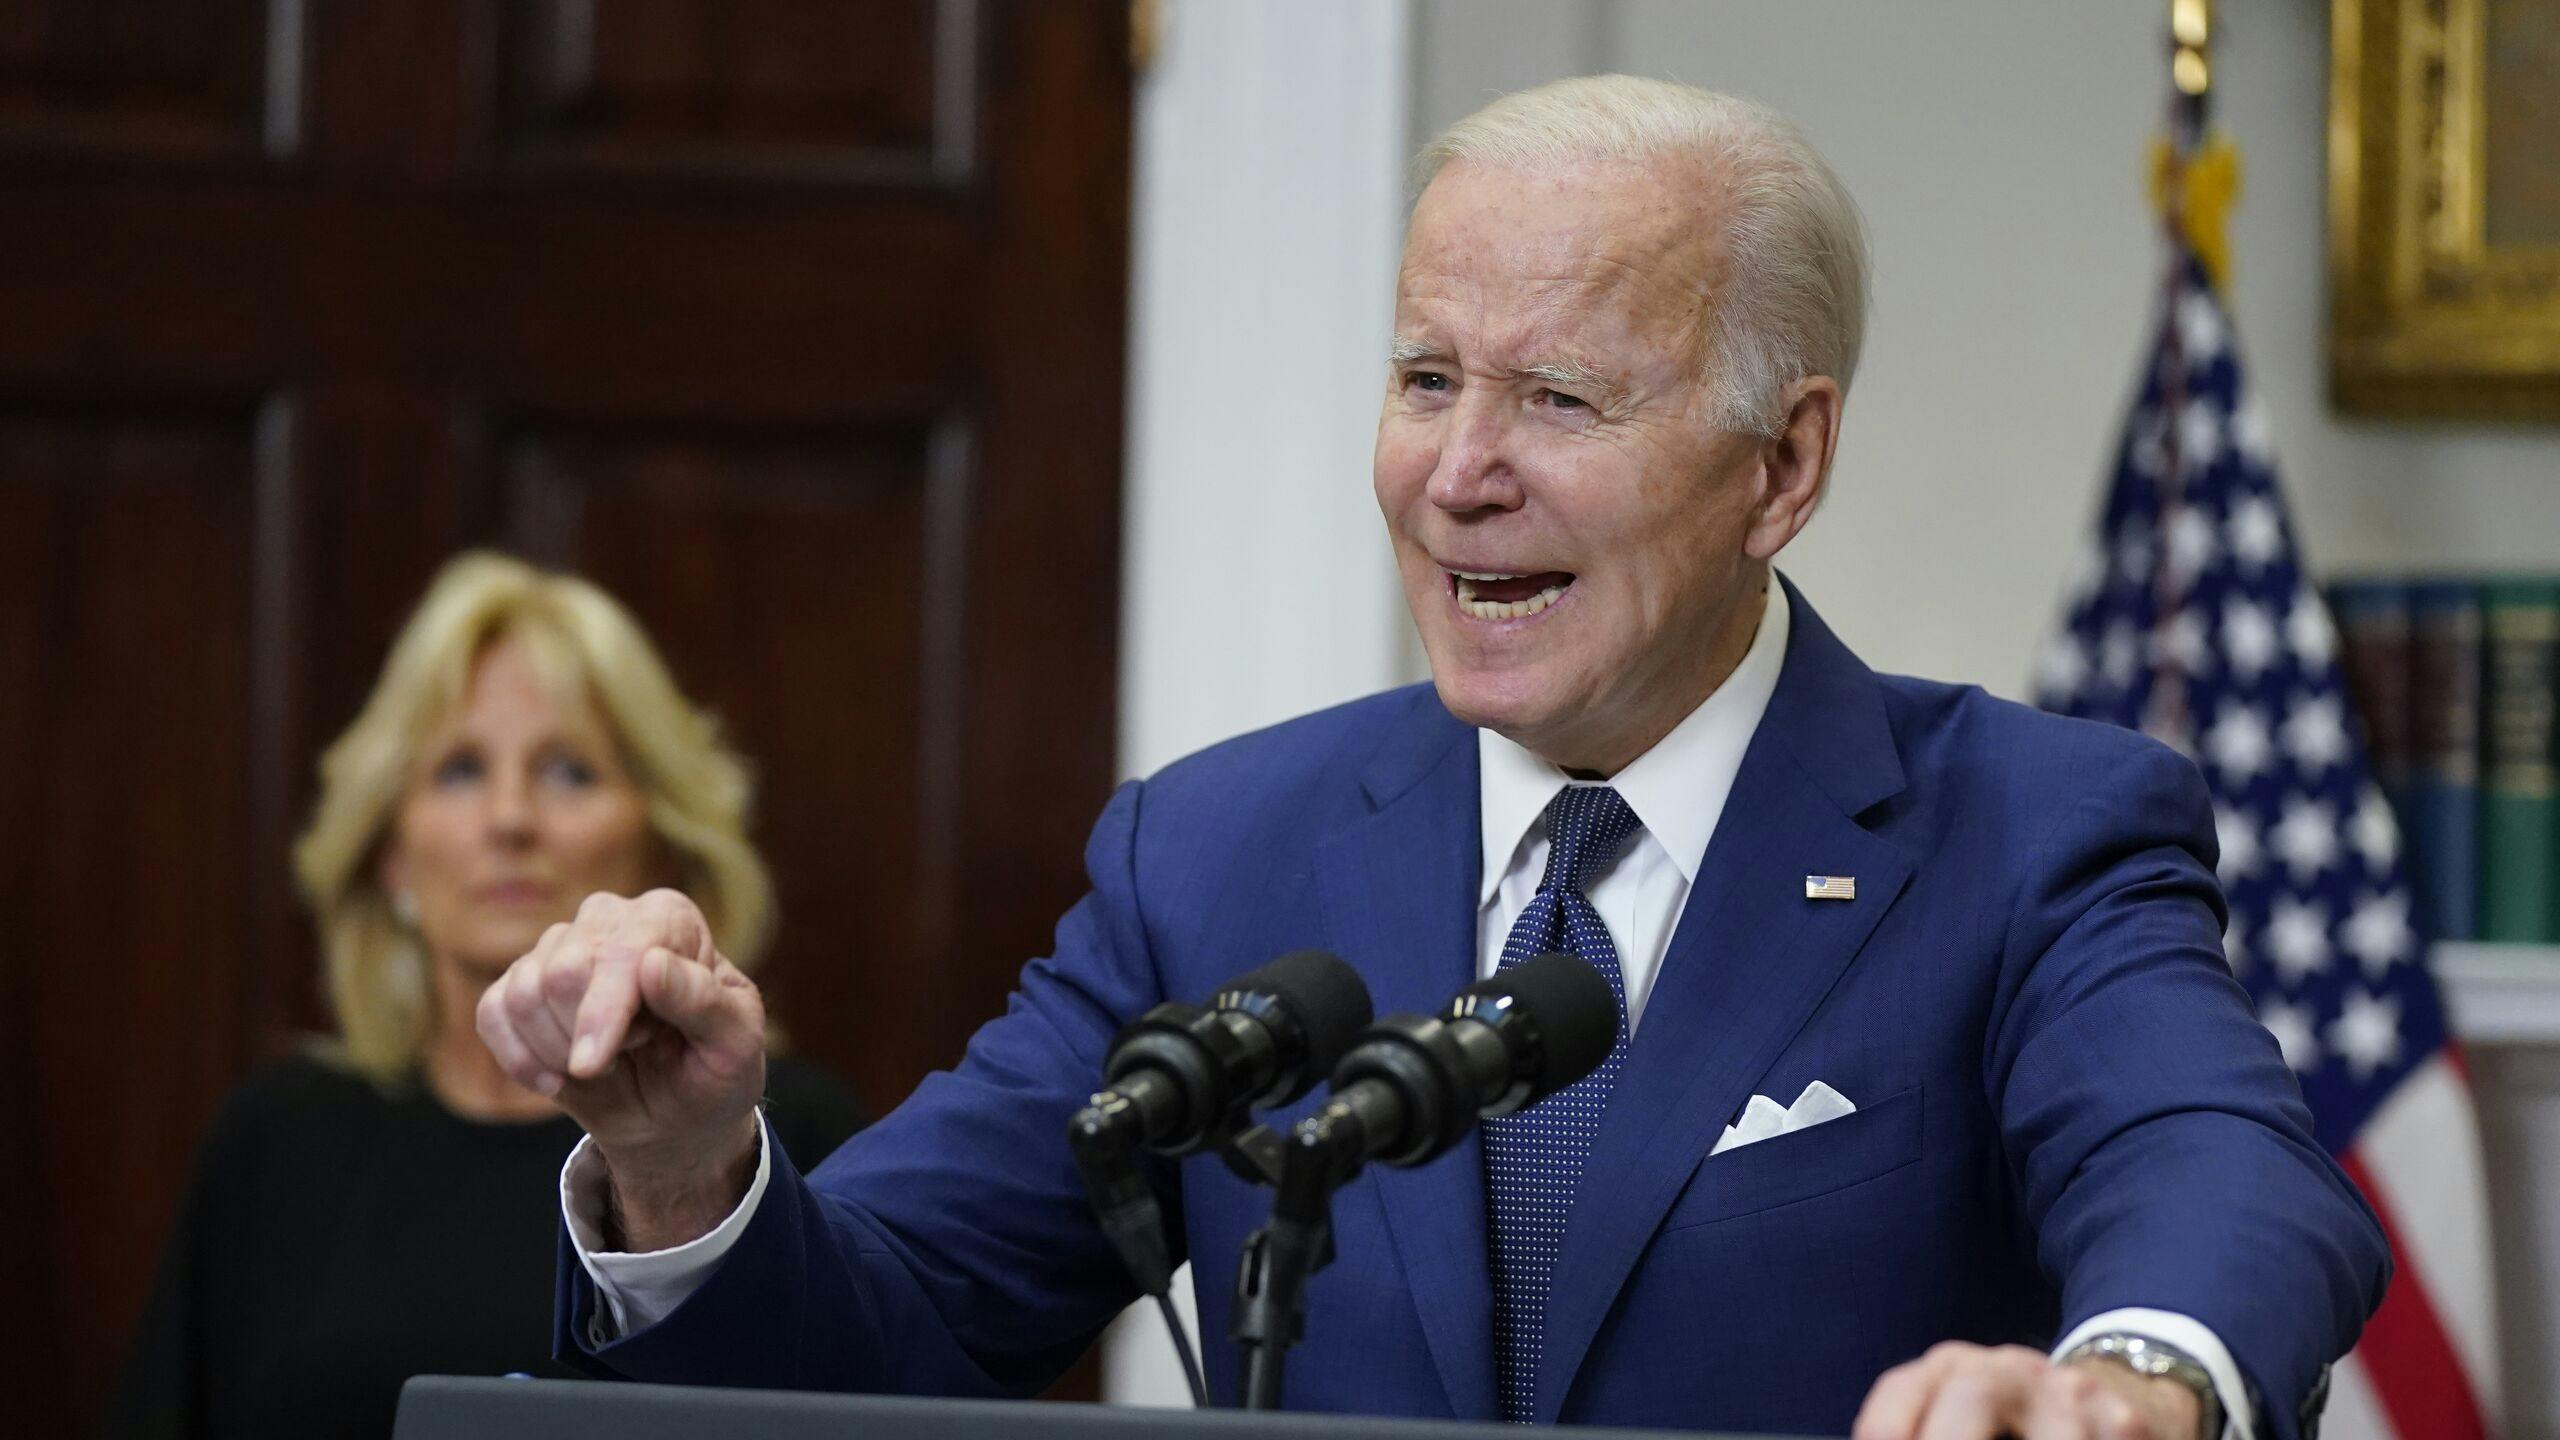 Joe Biden sprak de Verenigde Staten toe na de zoveelste schoolshooting die het land meemaakte.